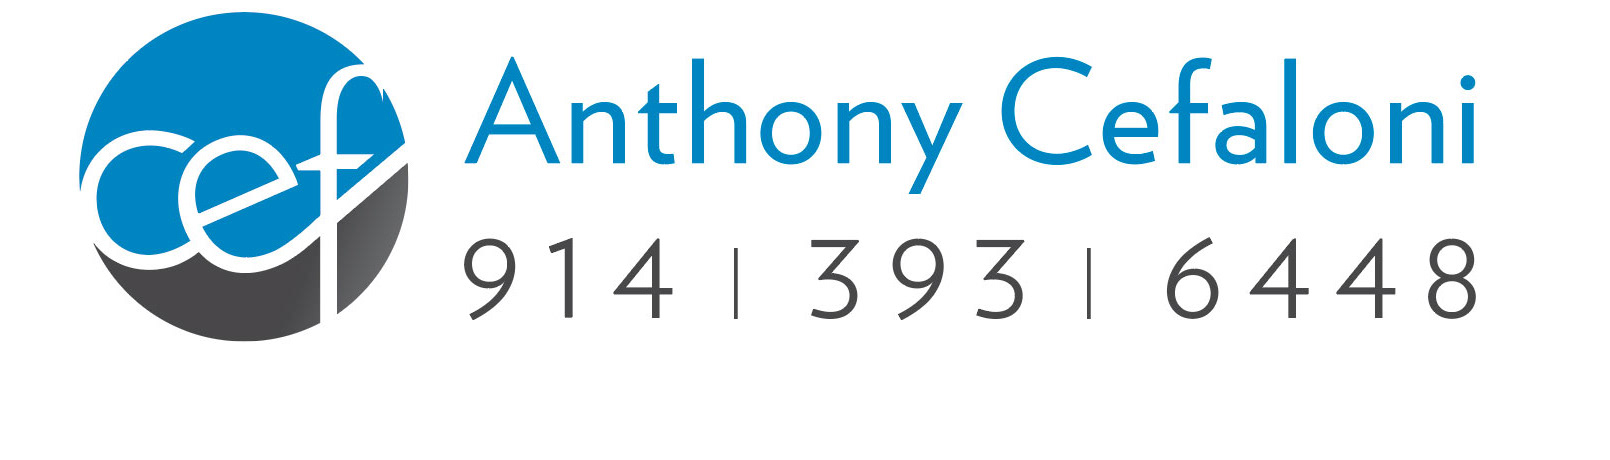 anthony cefaloni - 914.393.6448